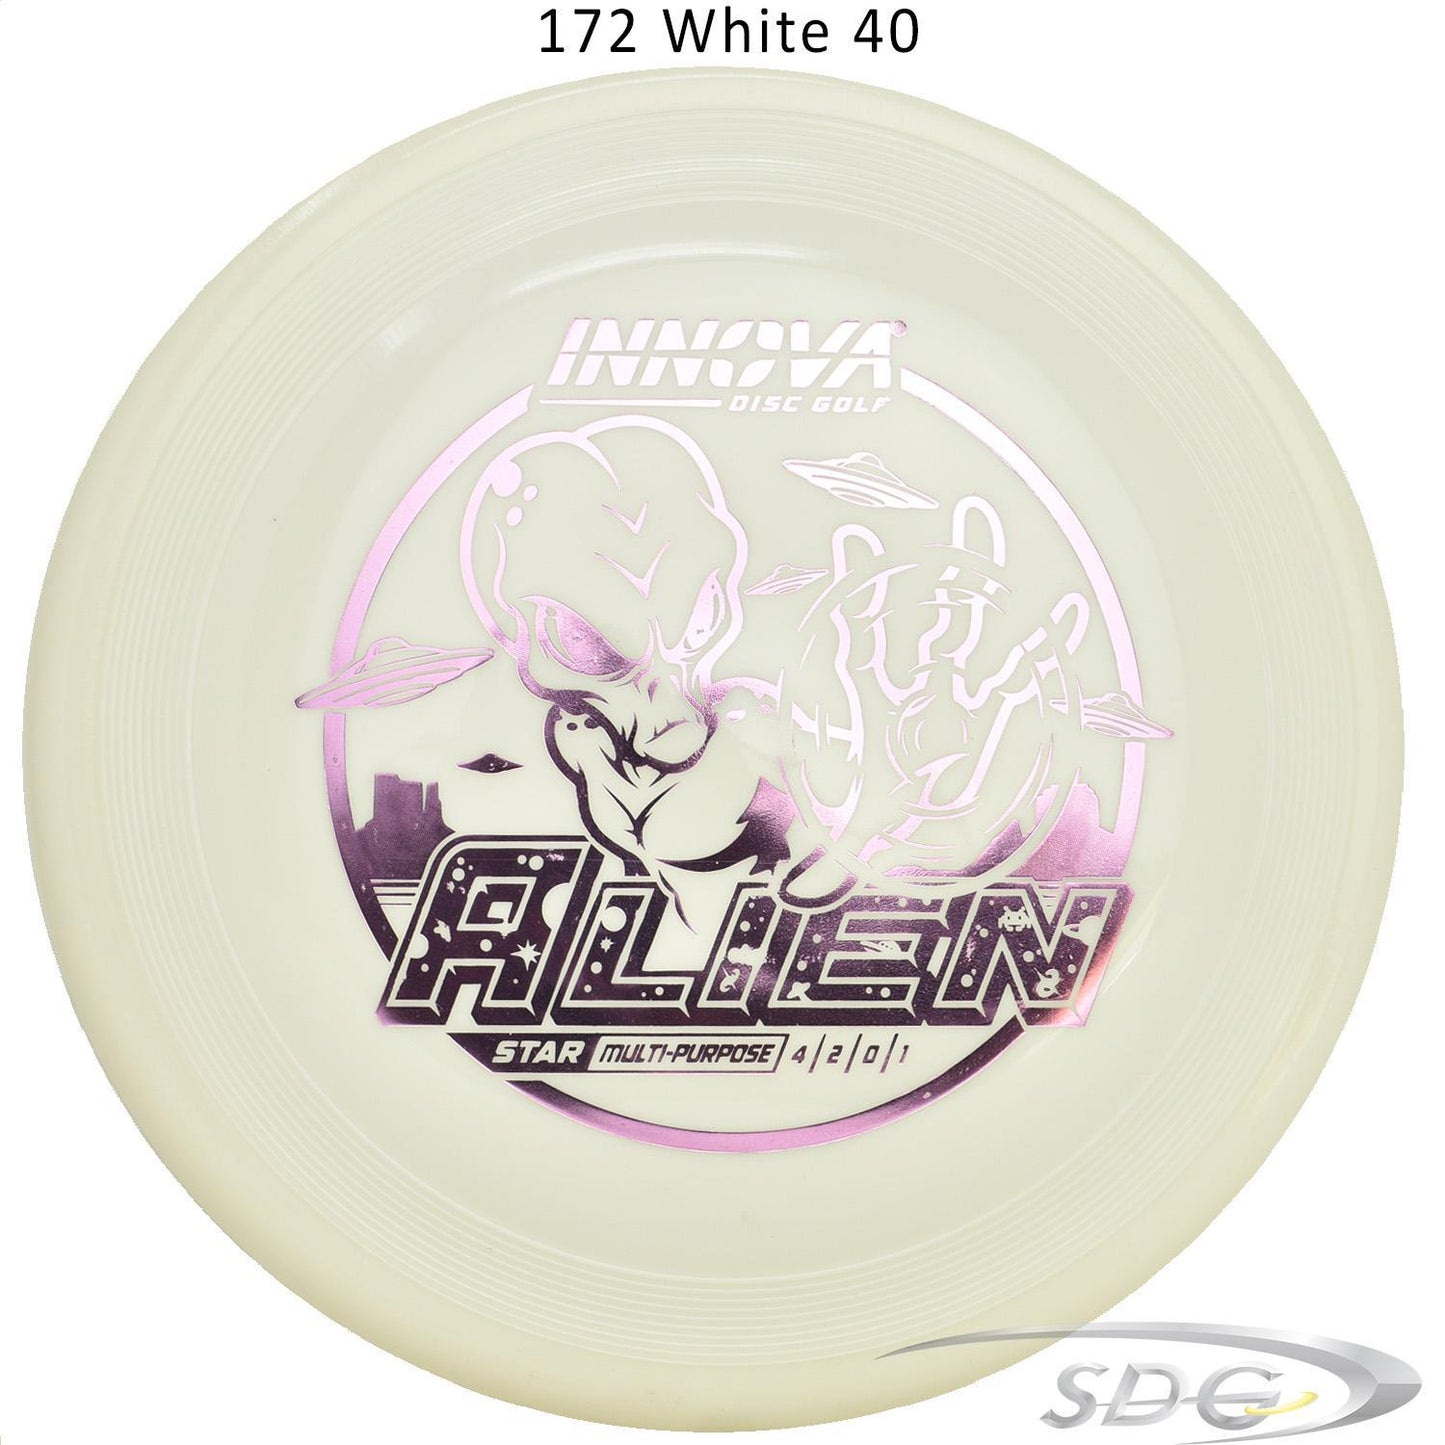 innova-star-alien-disc-golf-mid-range 172 White 40 